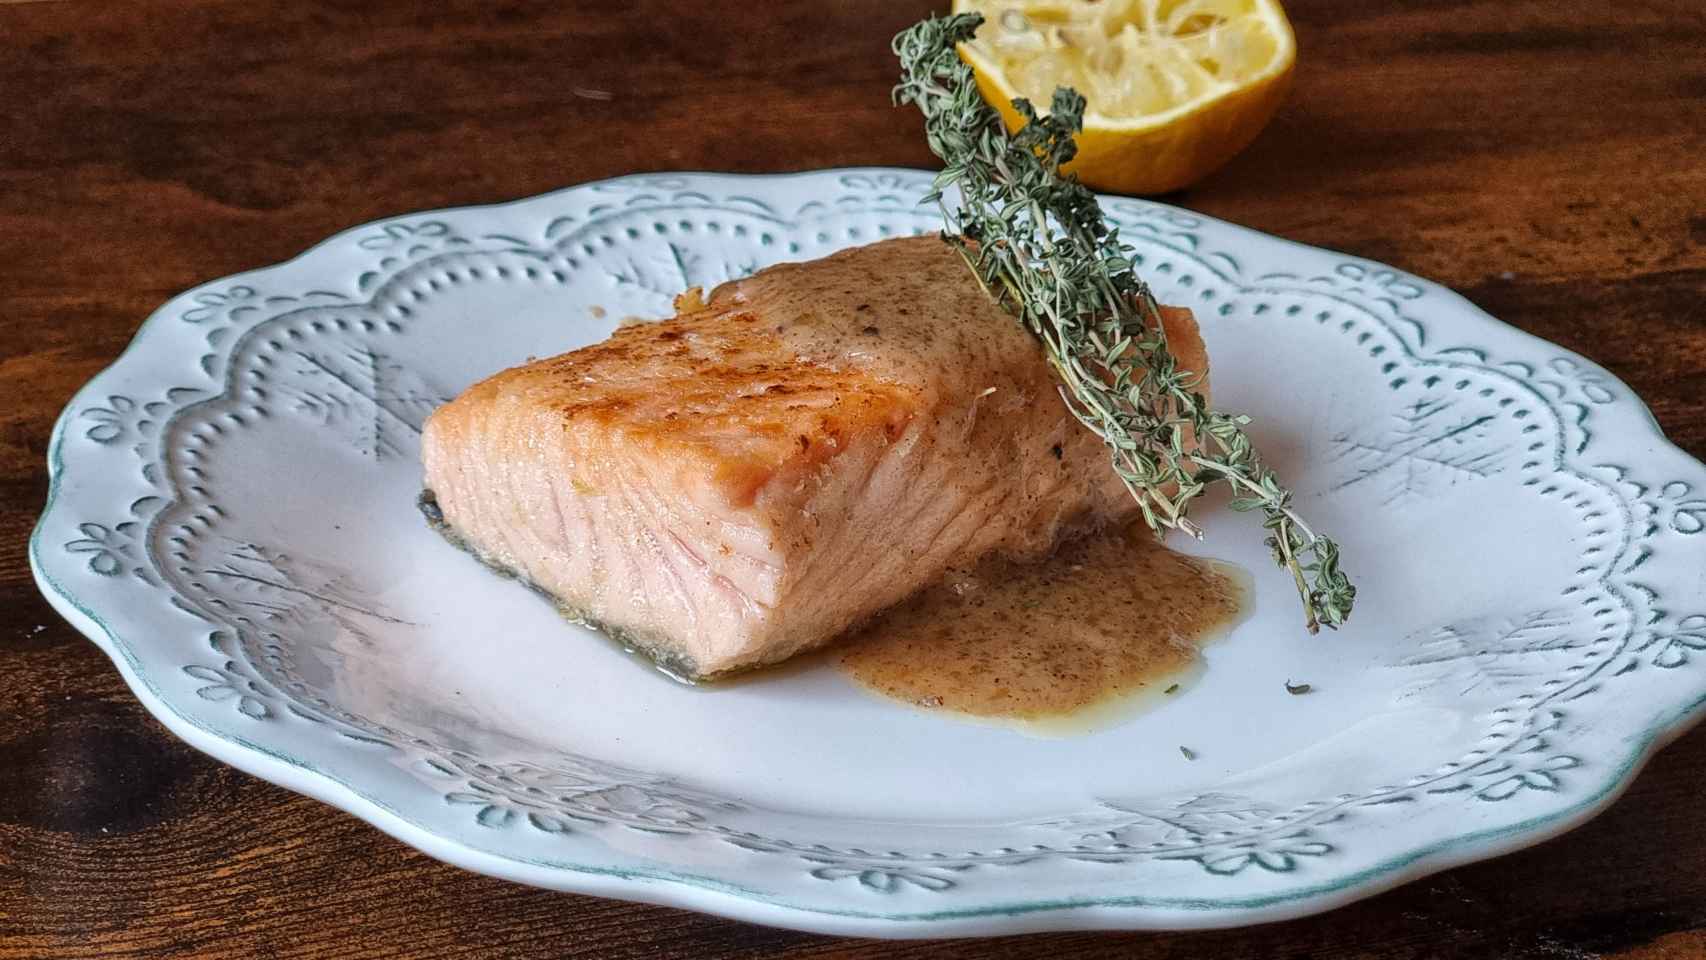 Salmón a la meuniere tostada, una receta de pescado fácil para Navidad